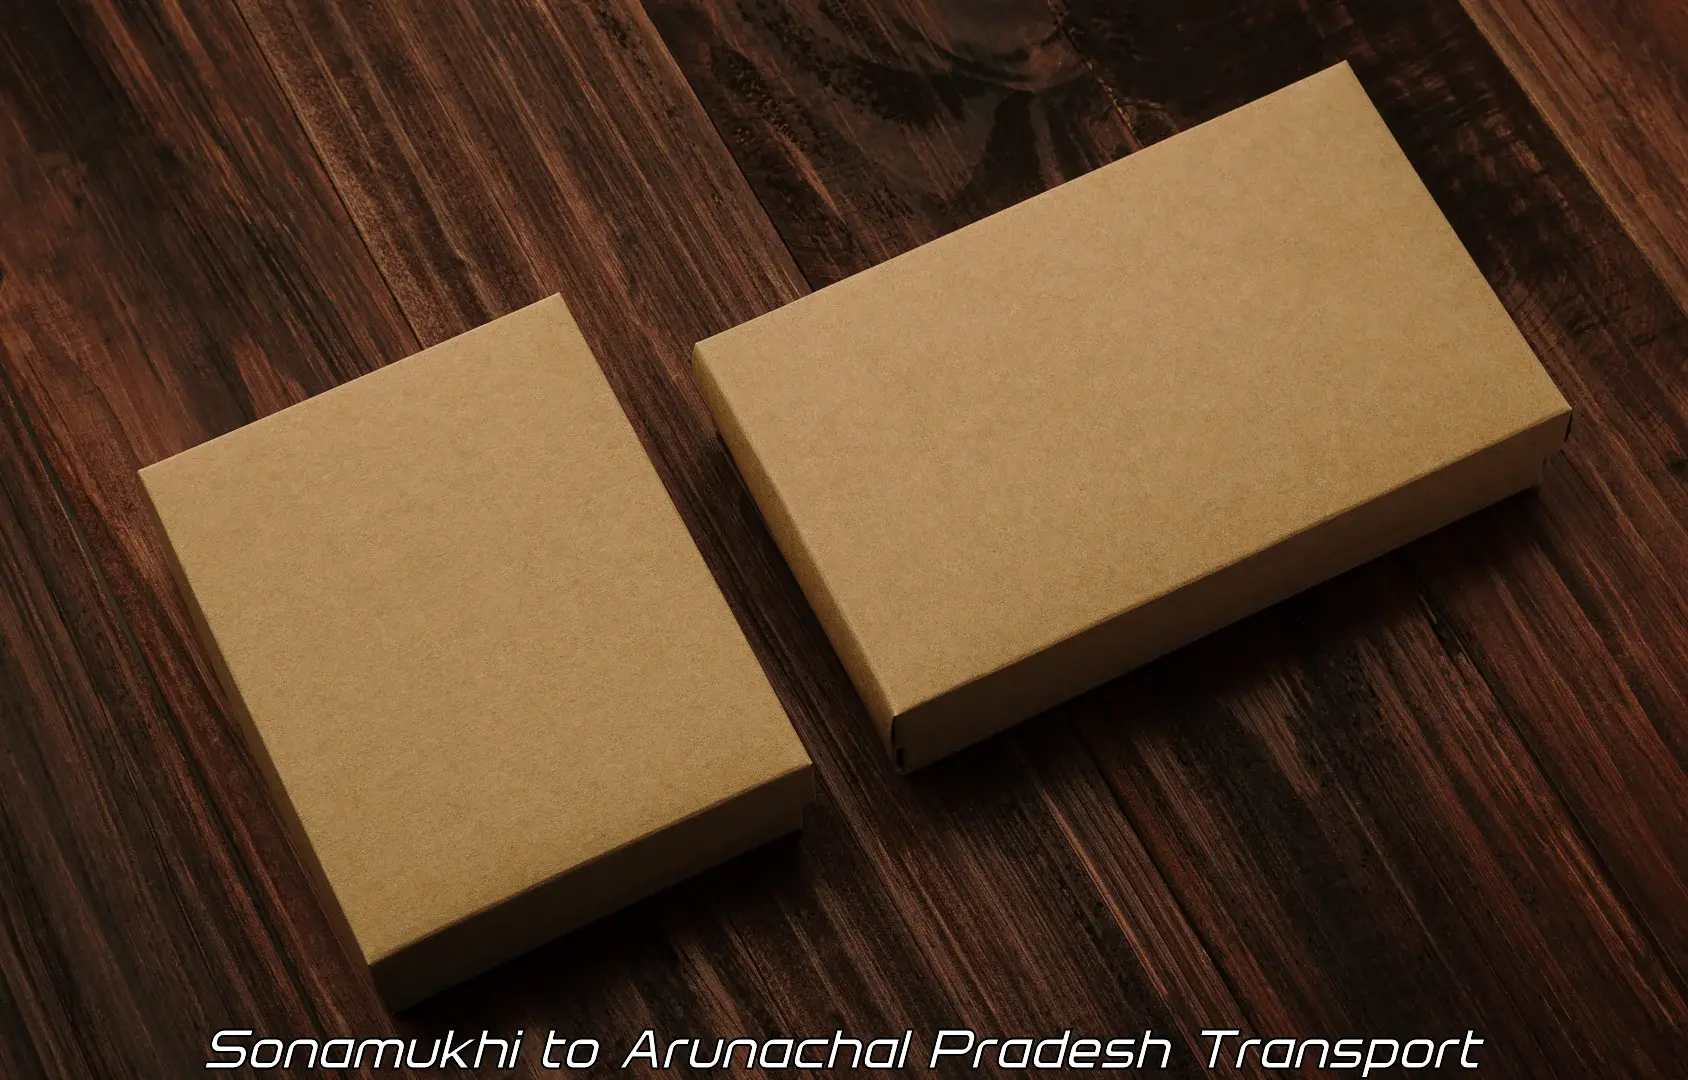 International cargo transportation services Sonamukhi to Lohit